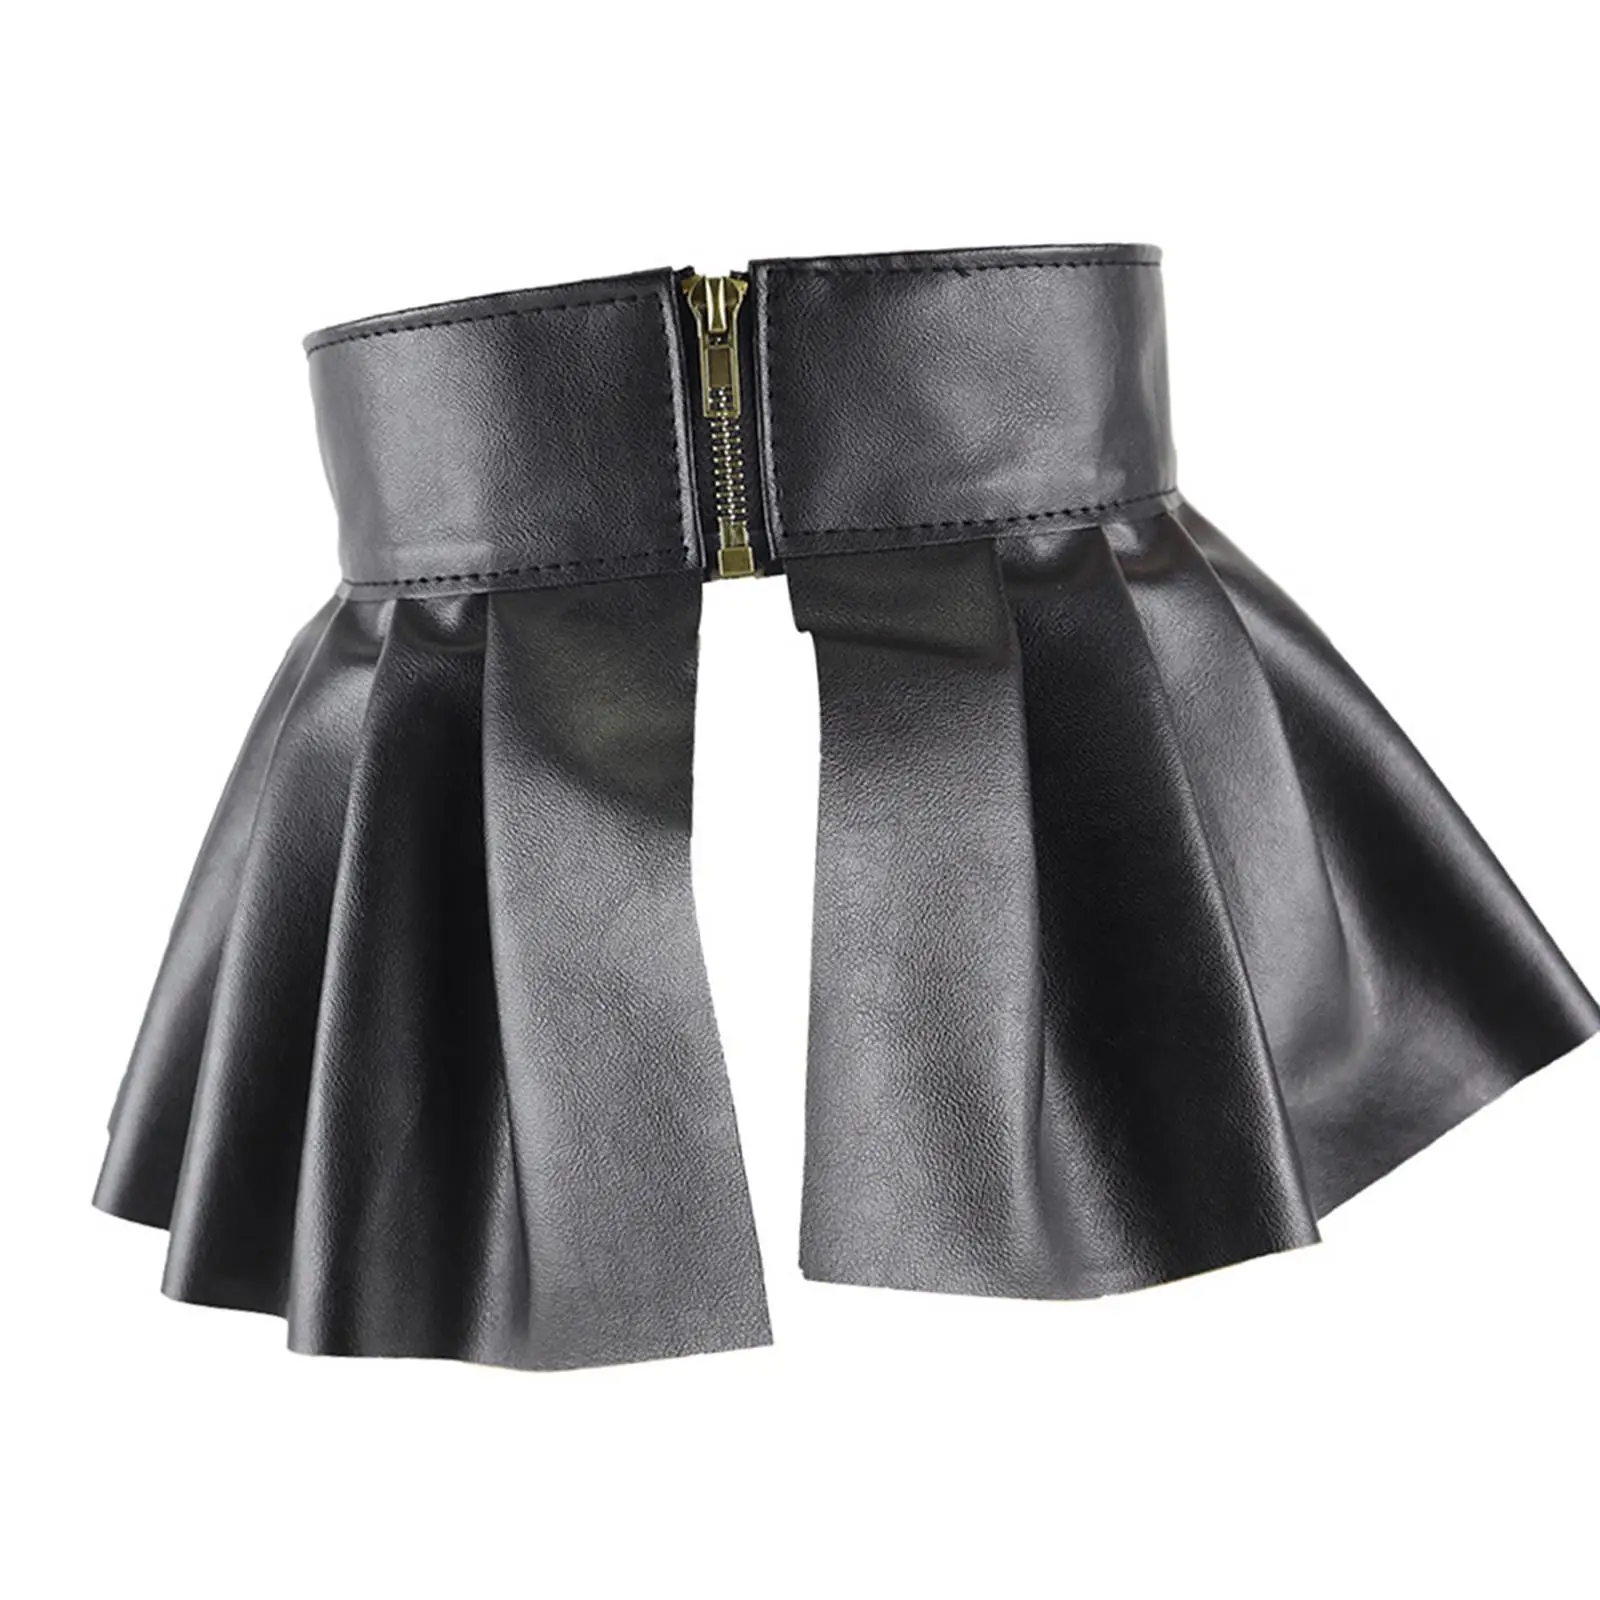 Waist Belt Skirts Wide Adjustable High Waist Cosplay Women Charm Waistband